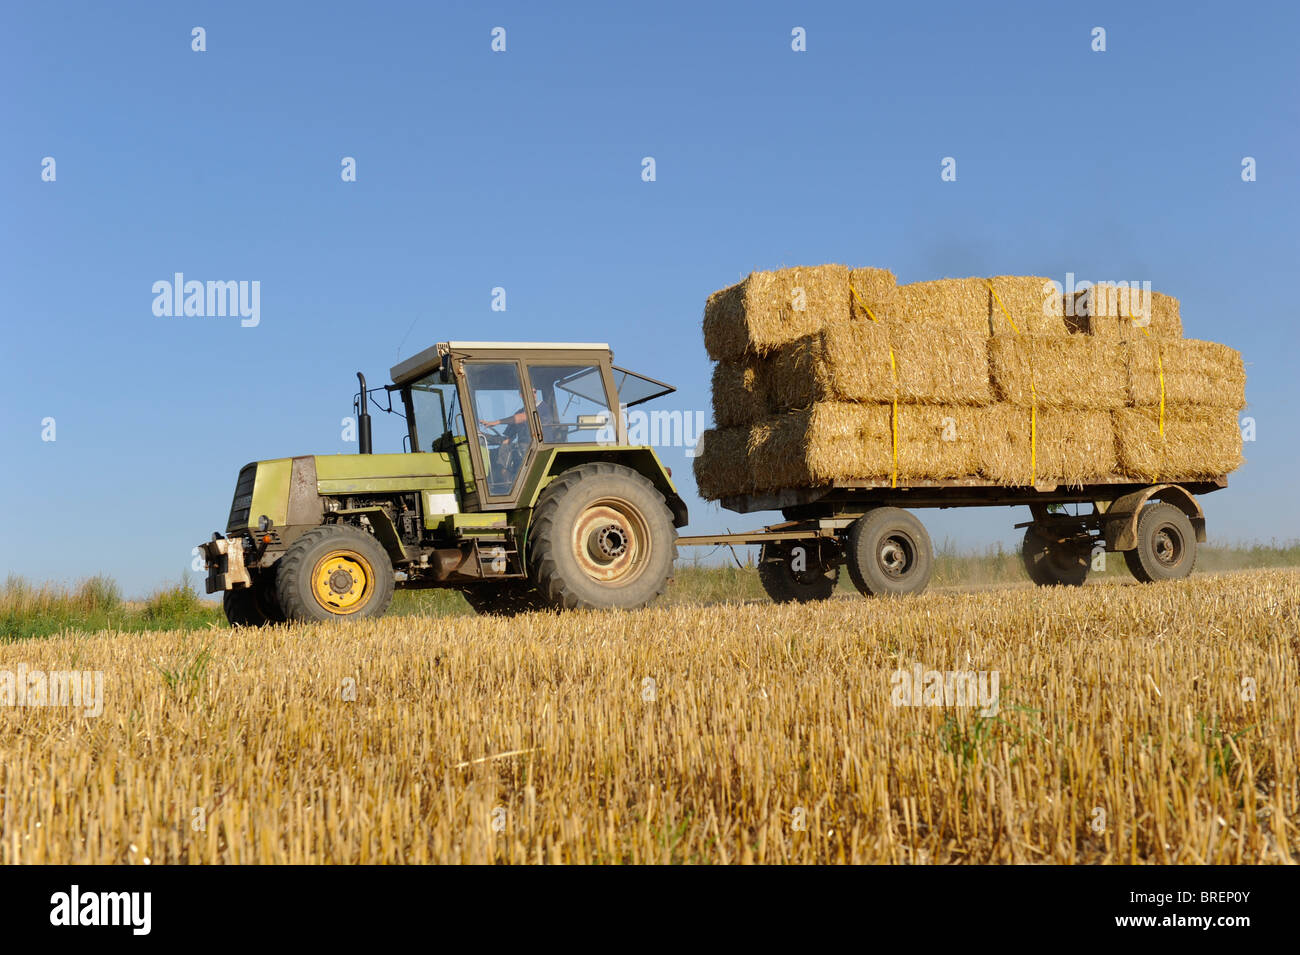 Alemania tractor transportar fardos de paja Foto de stock